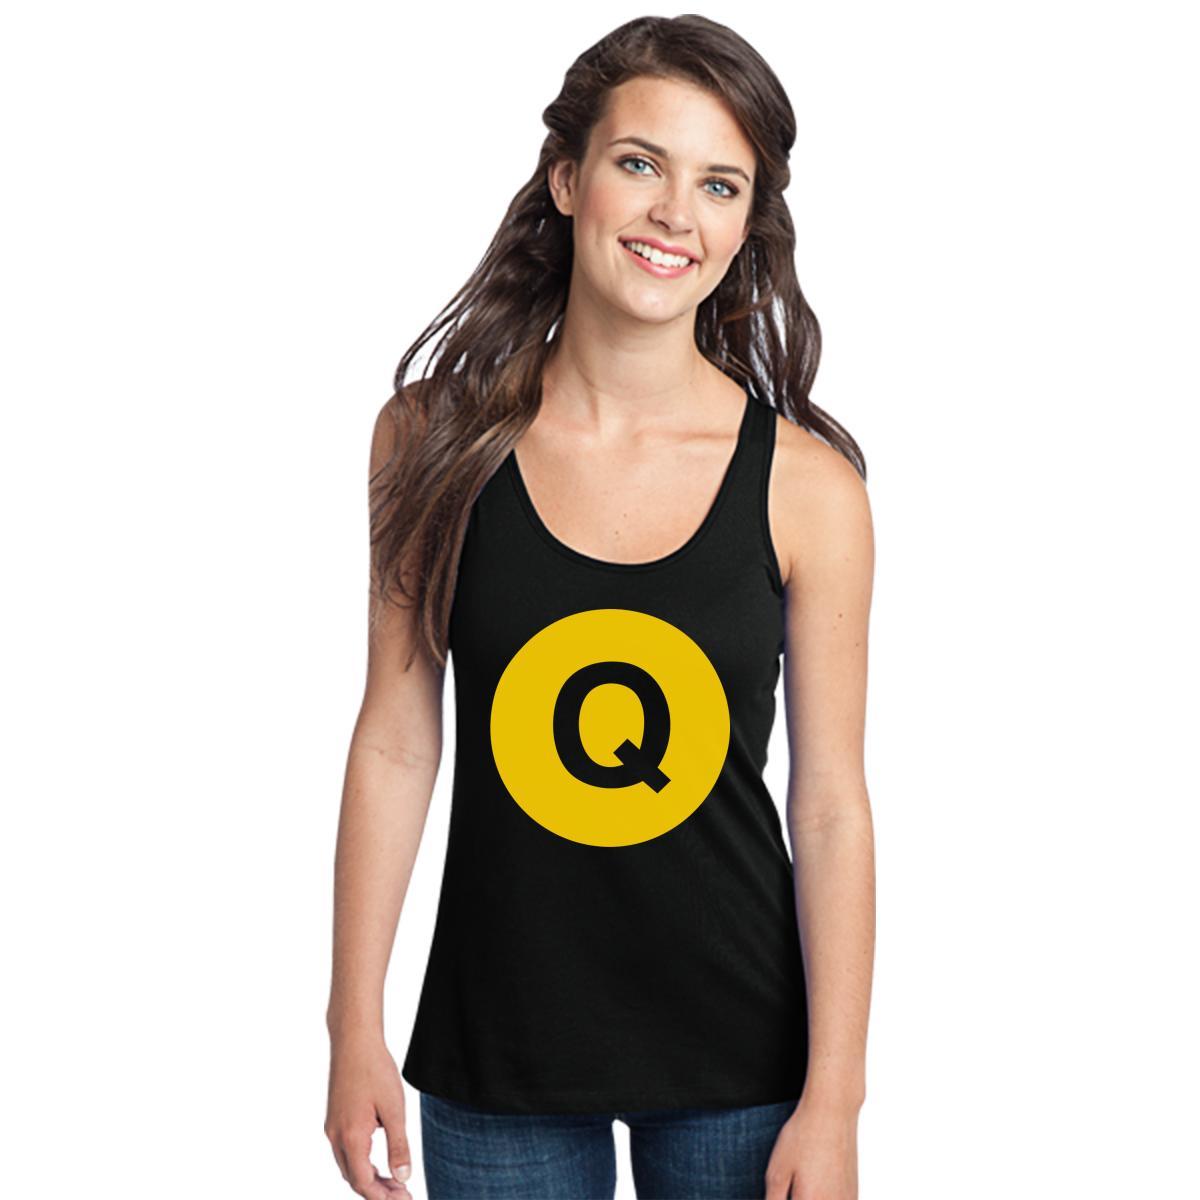 Q Train Logo - Omega Psi Phi Q train logo Women's Racerback Tank Top